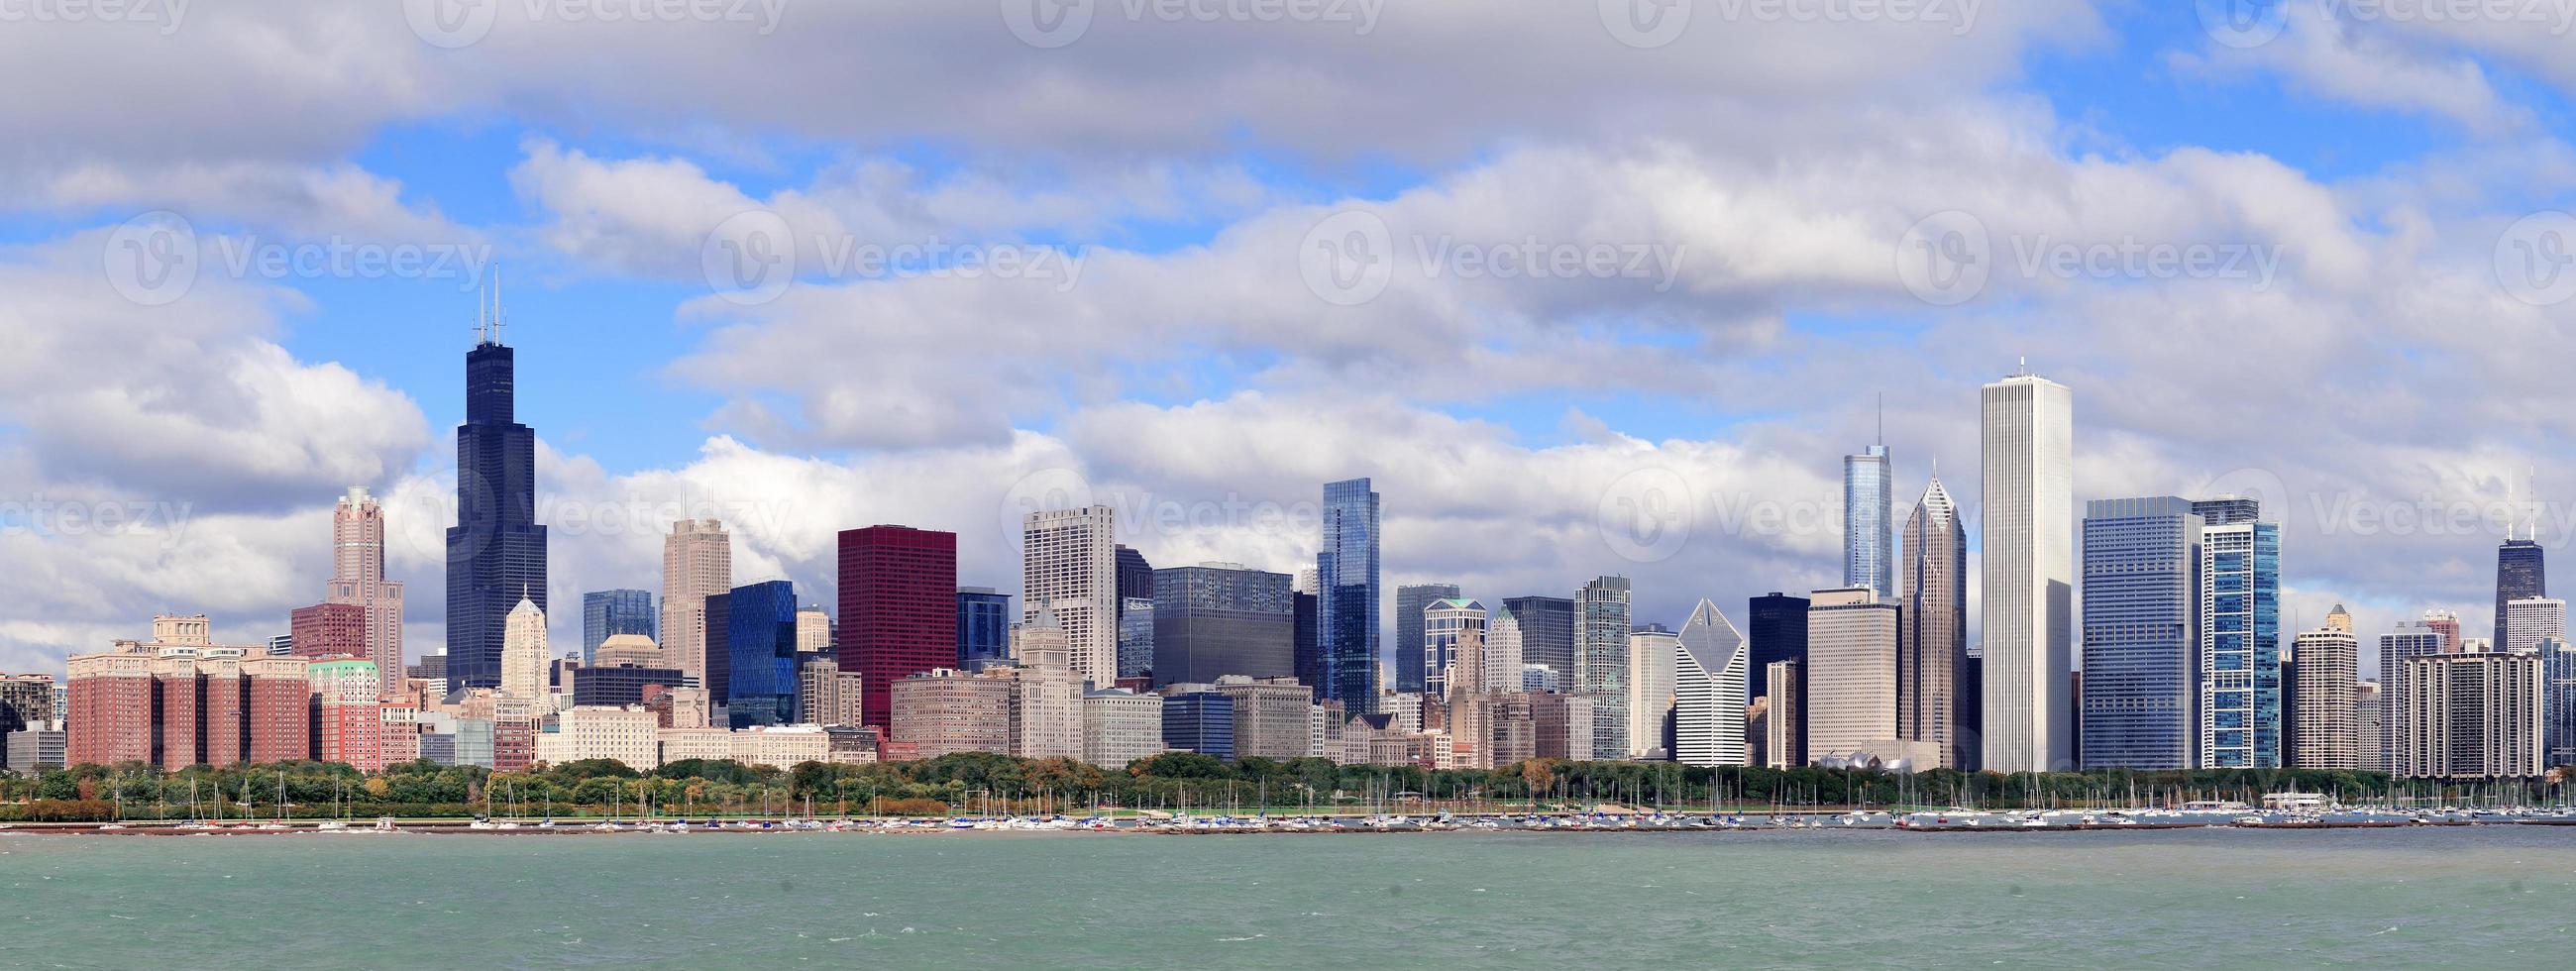 chicago skyline over het meer van michigan foto